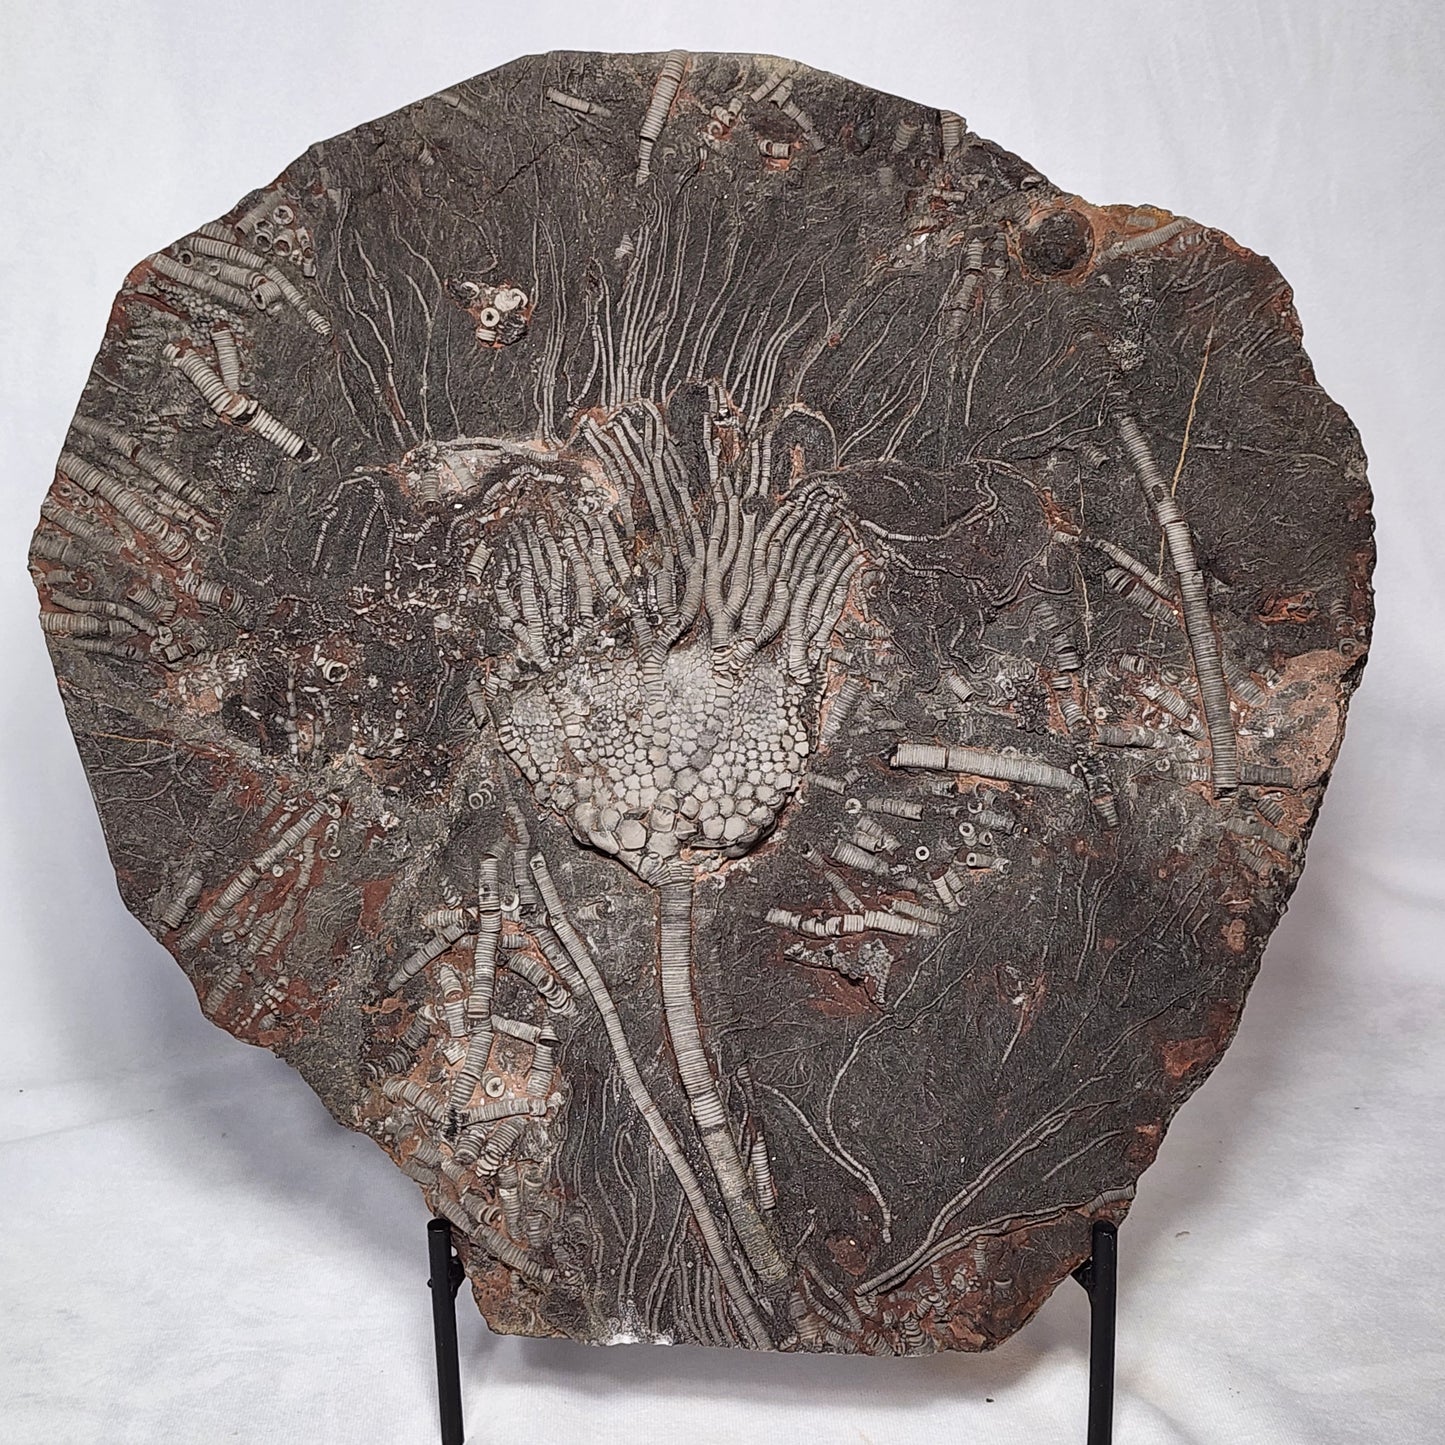 Astonishing Crinoid Plate